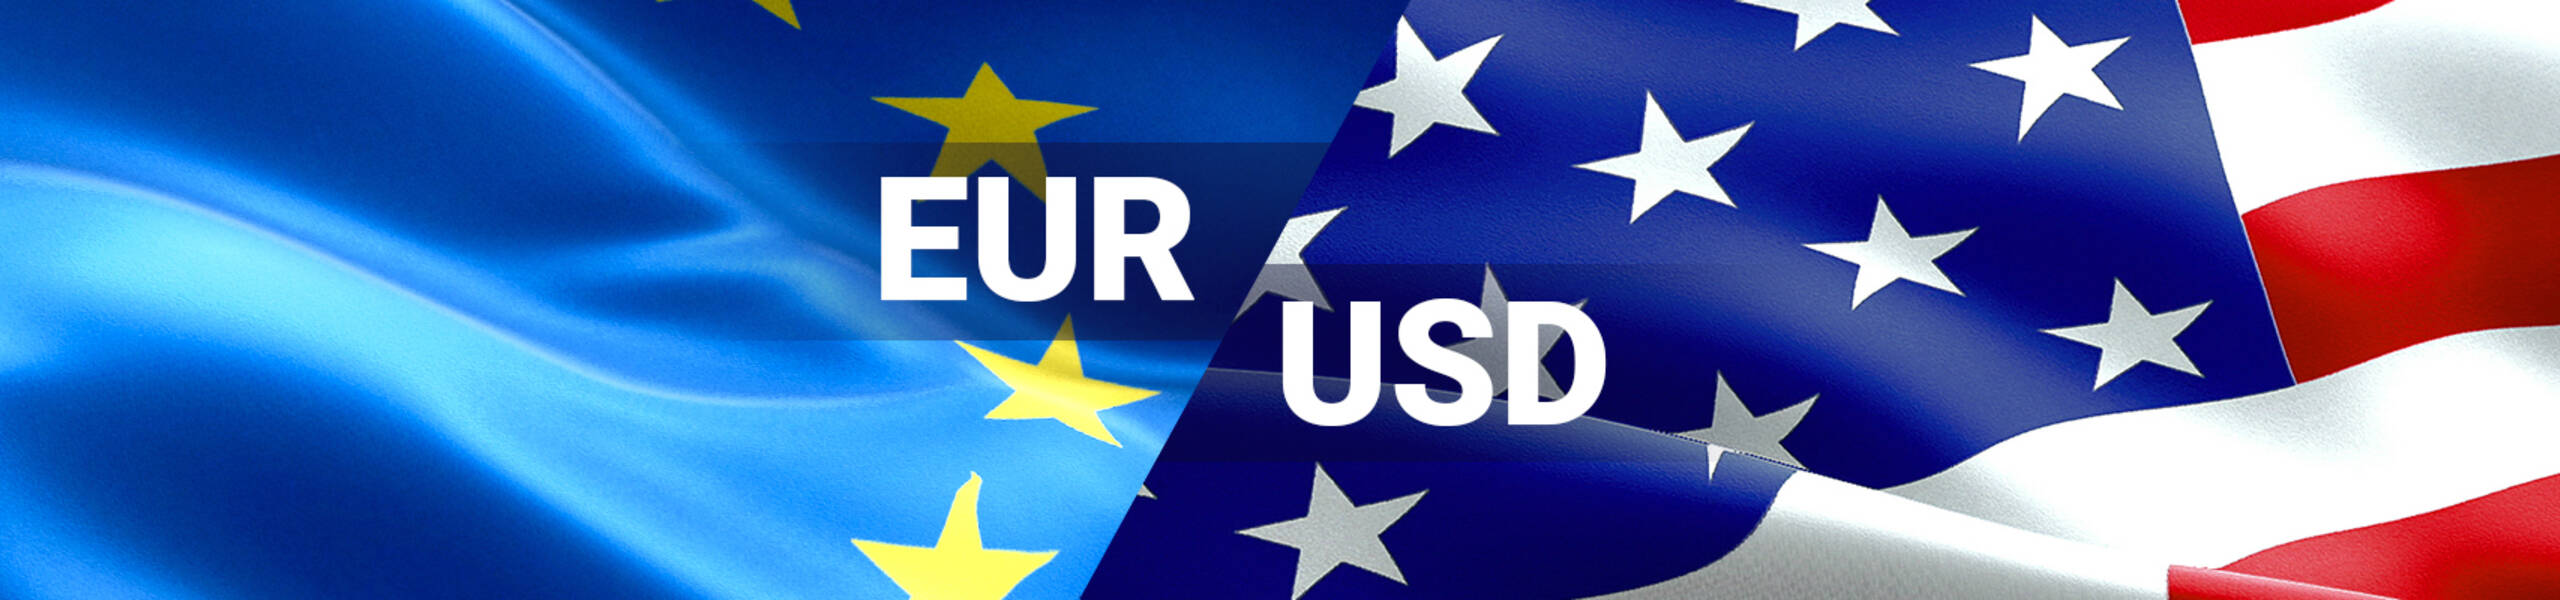 EUR/USD buscando consolidar las ganancias